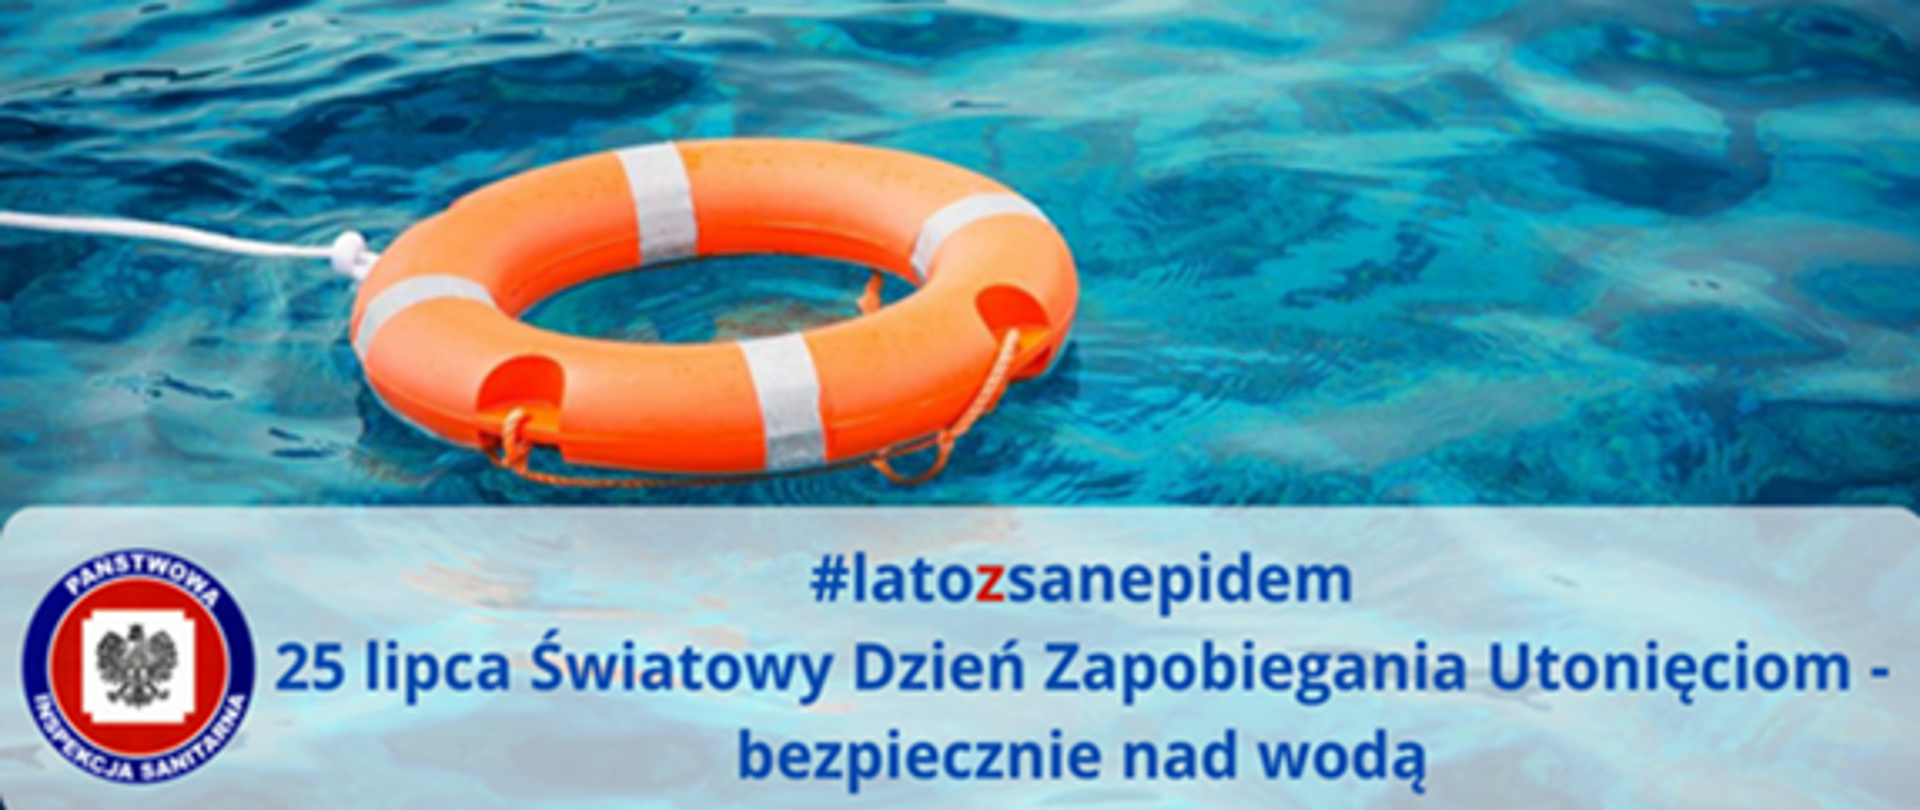 #latozsanepidem 25 lipca Światowy Dzień Zapobiegania Utonięciom - bezpiecznie nad wodą